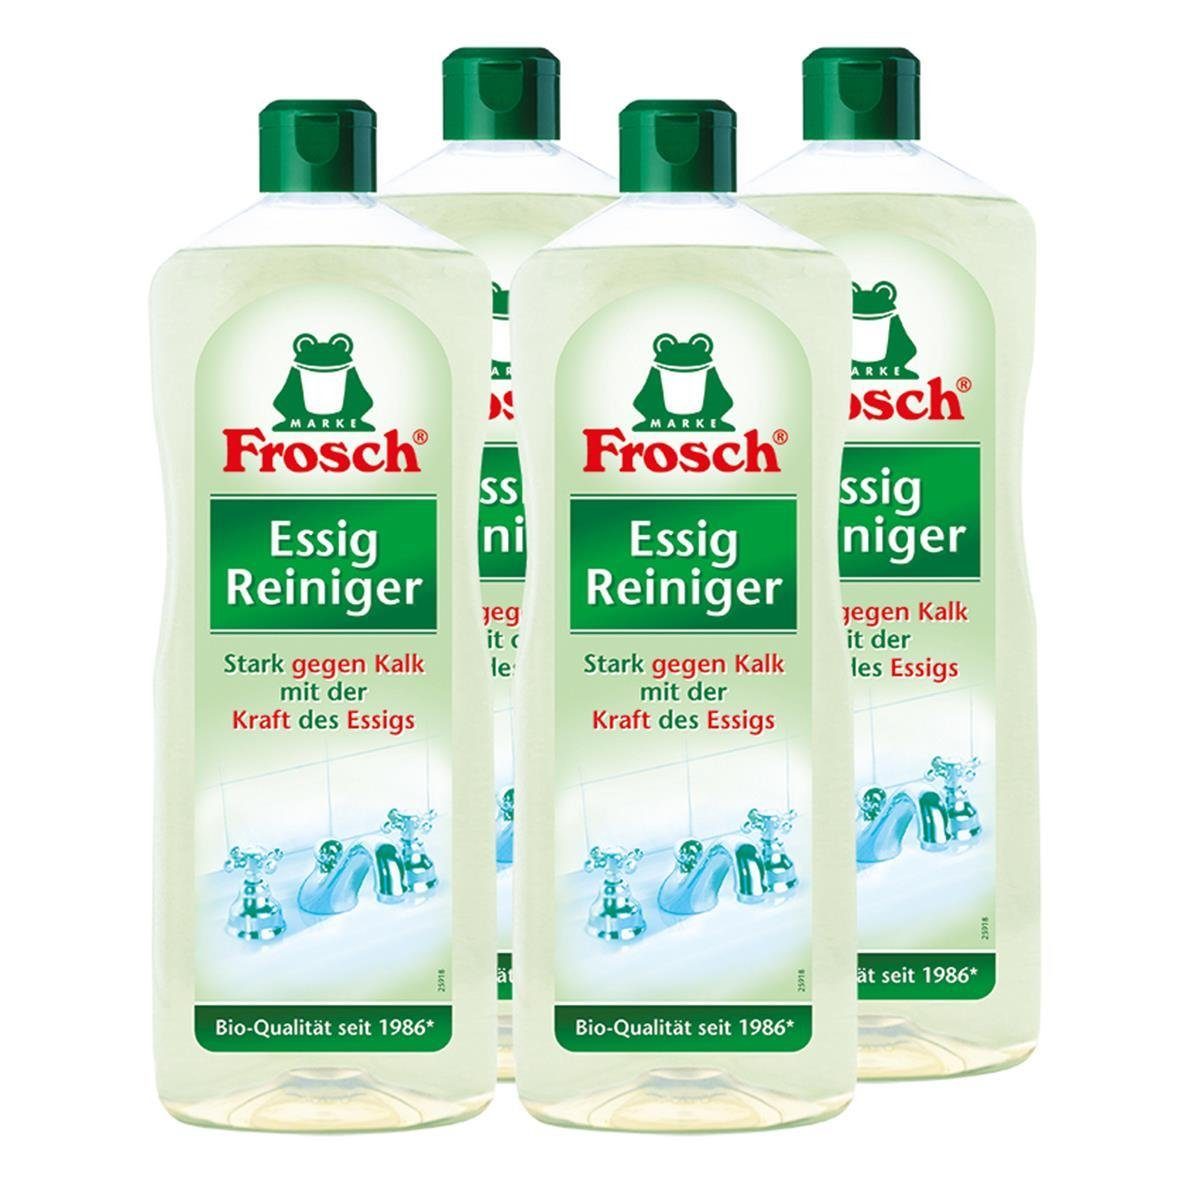 FROSCH 4x Frosch Essig Reiniger 1 Liter – Stark gegen Kalk Allzweckreiniger